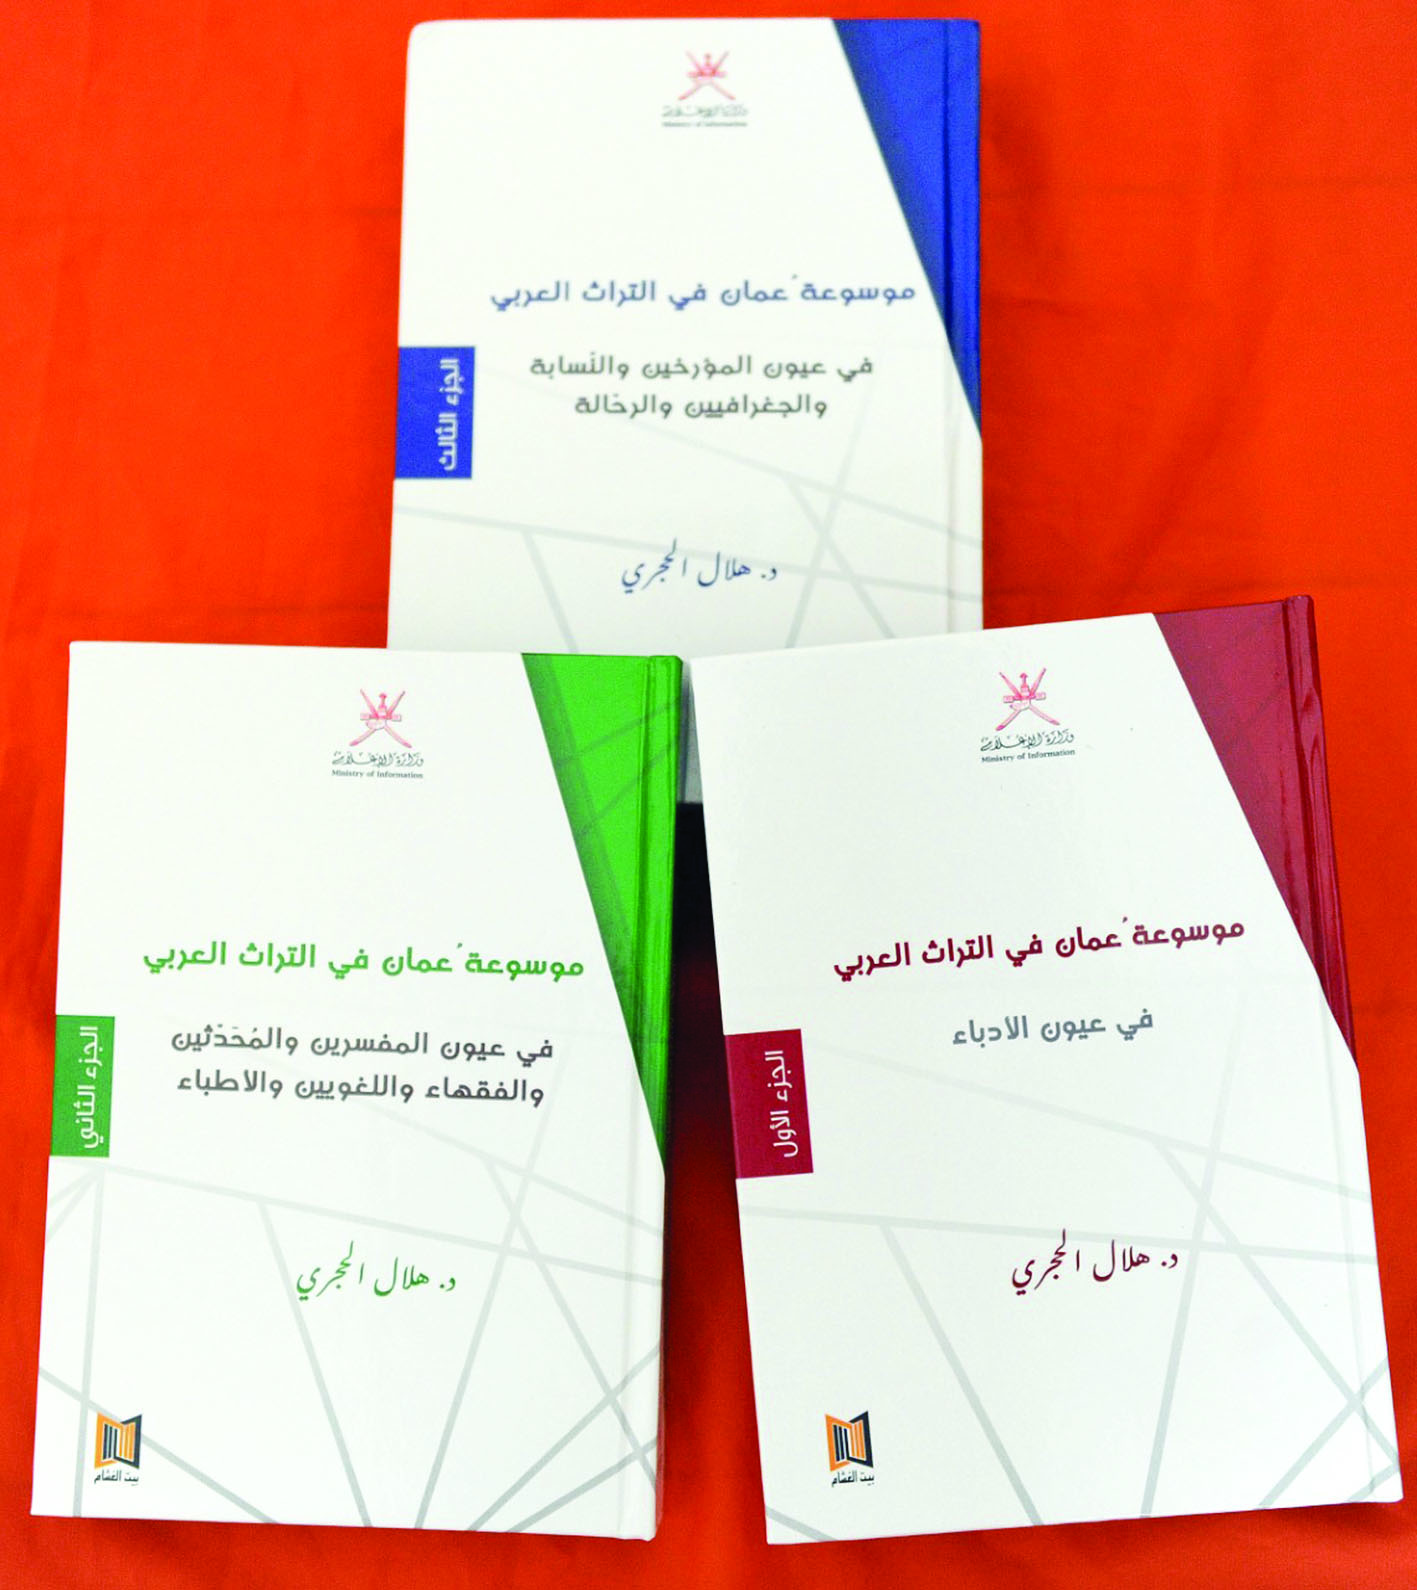 للباحث د.هلال بن سعيد الحجري

صدور موسوعة عمان في 

التراث العربي في ثلاثة أجزاء